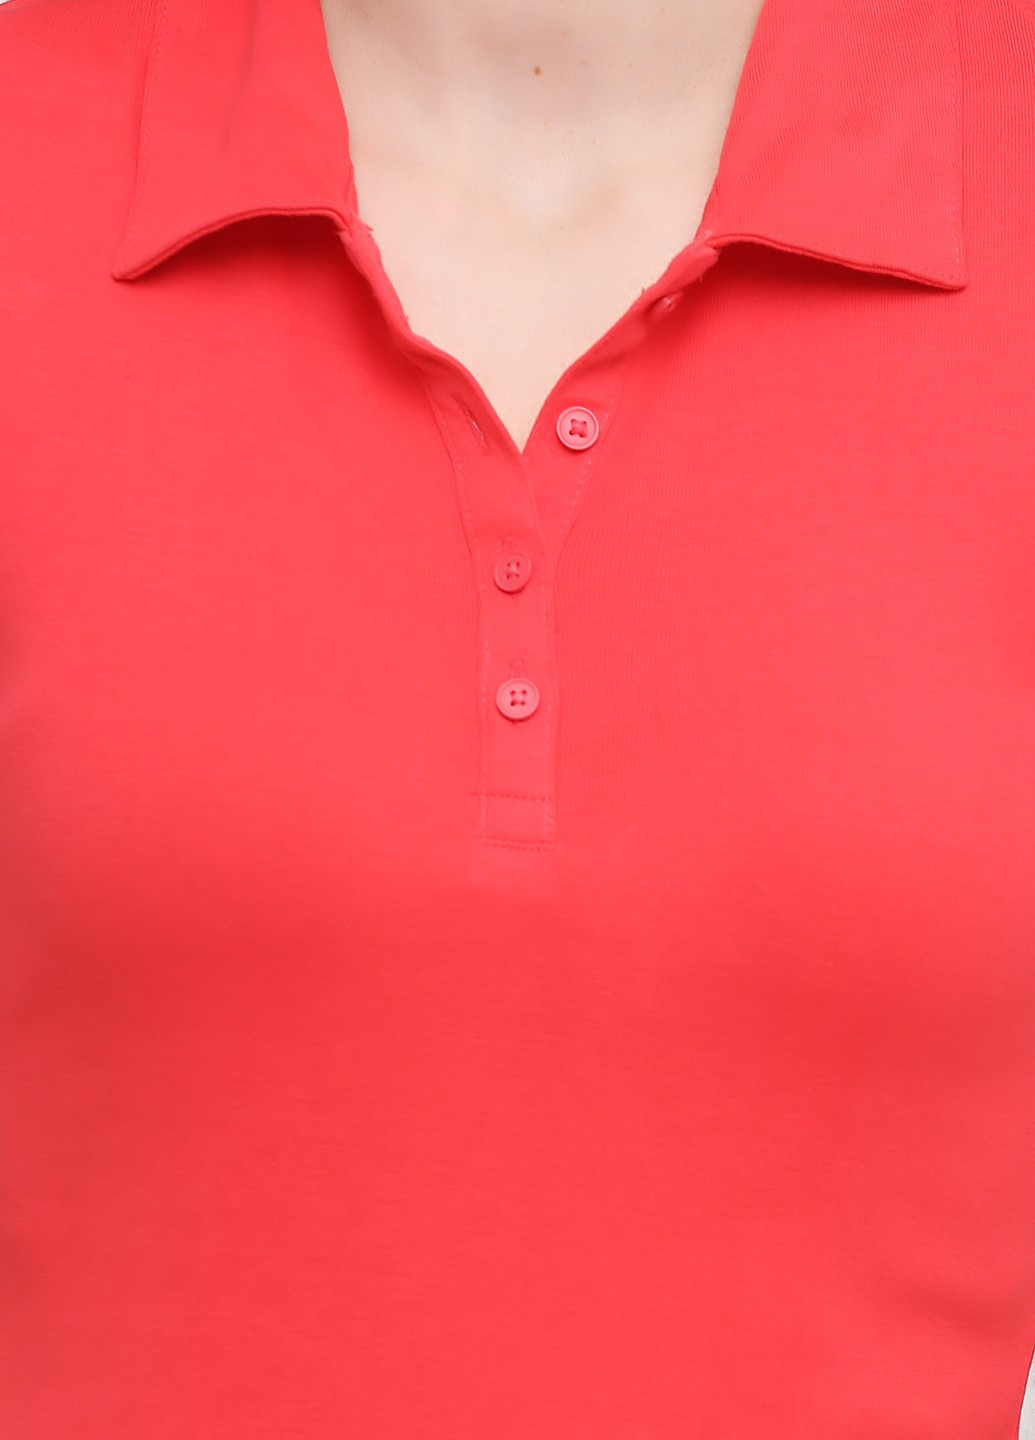 Коралловая женская футболка-поло C&A однотонная